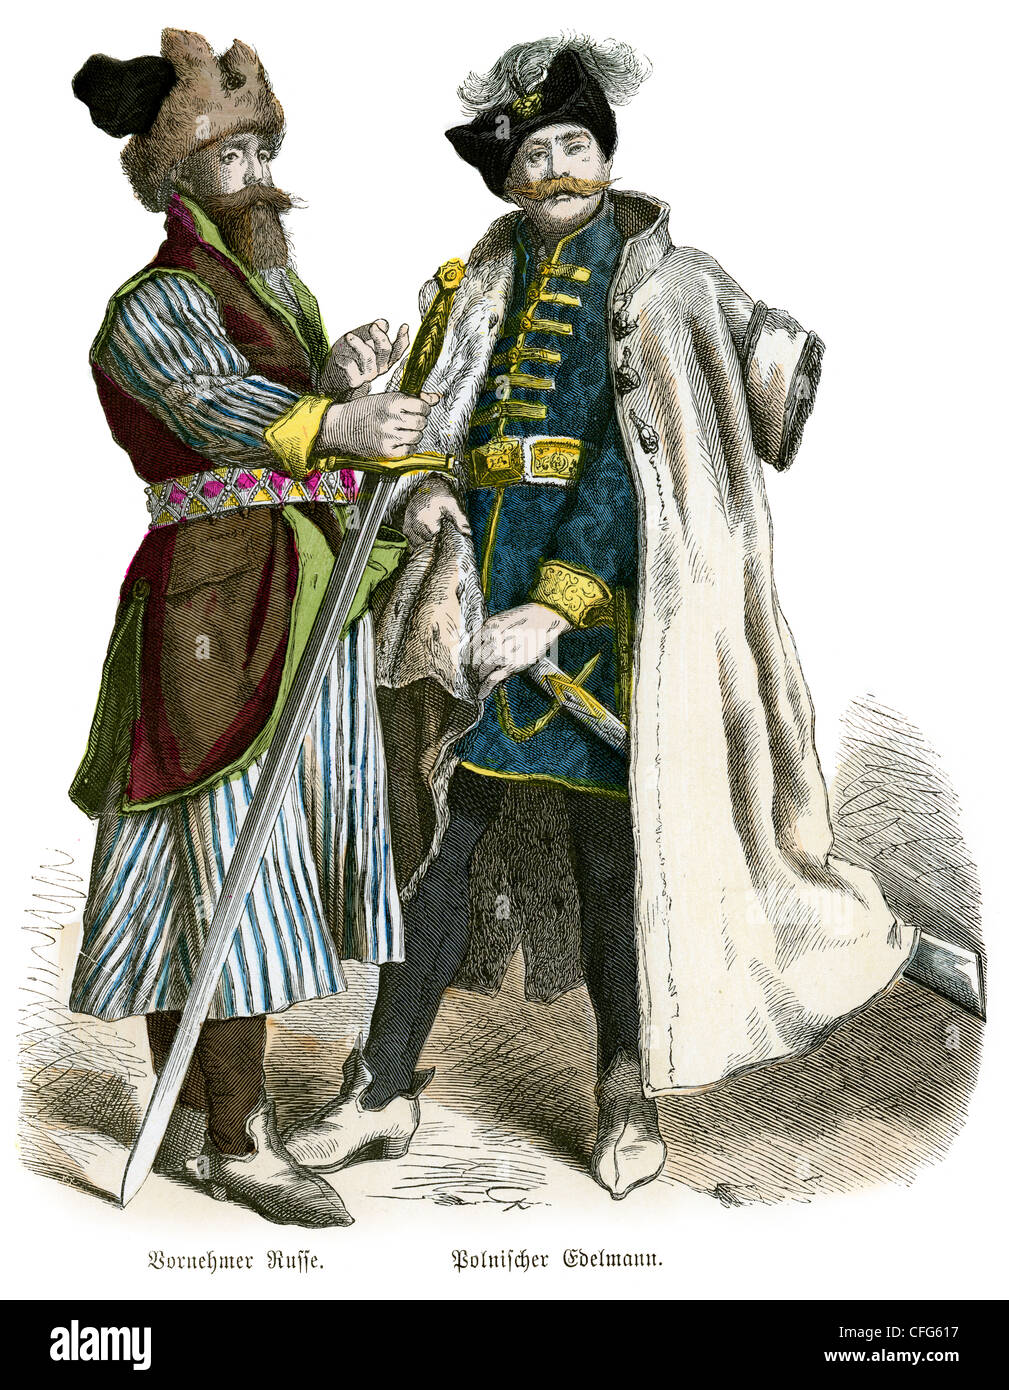 Ein polnischer Adliger und Bornehmer Russe aus dem 16. Jahrhundert Stockfoto